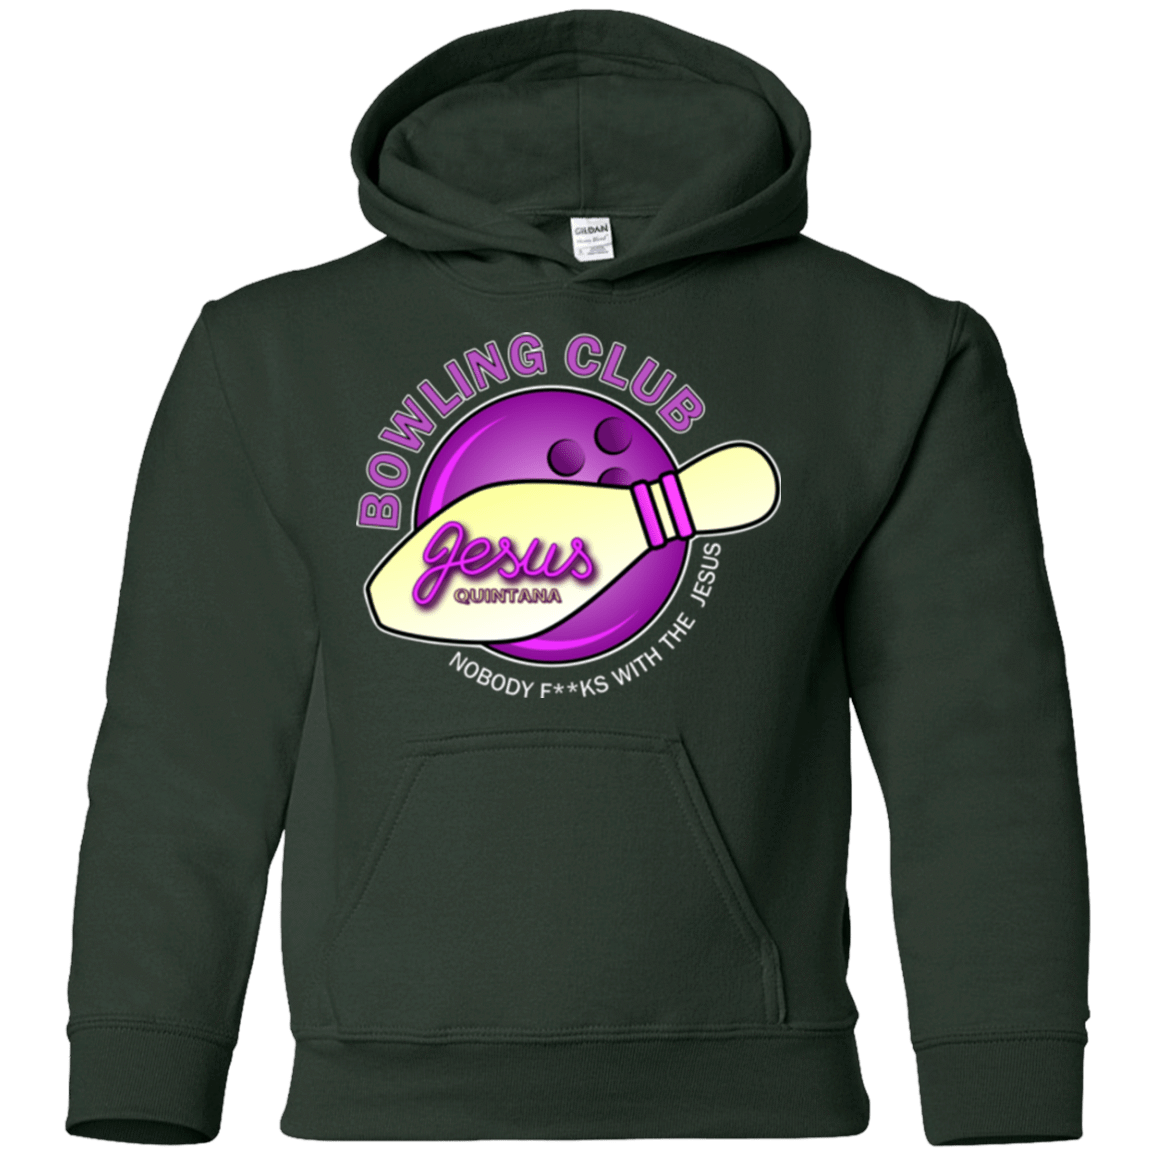 Sweatshirts Forest Green / YS Bowling club Youth Hoodie